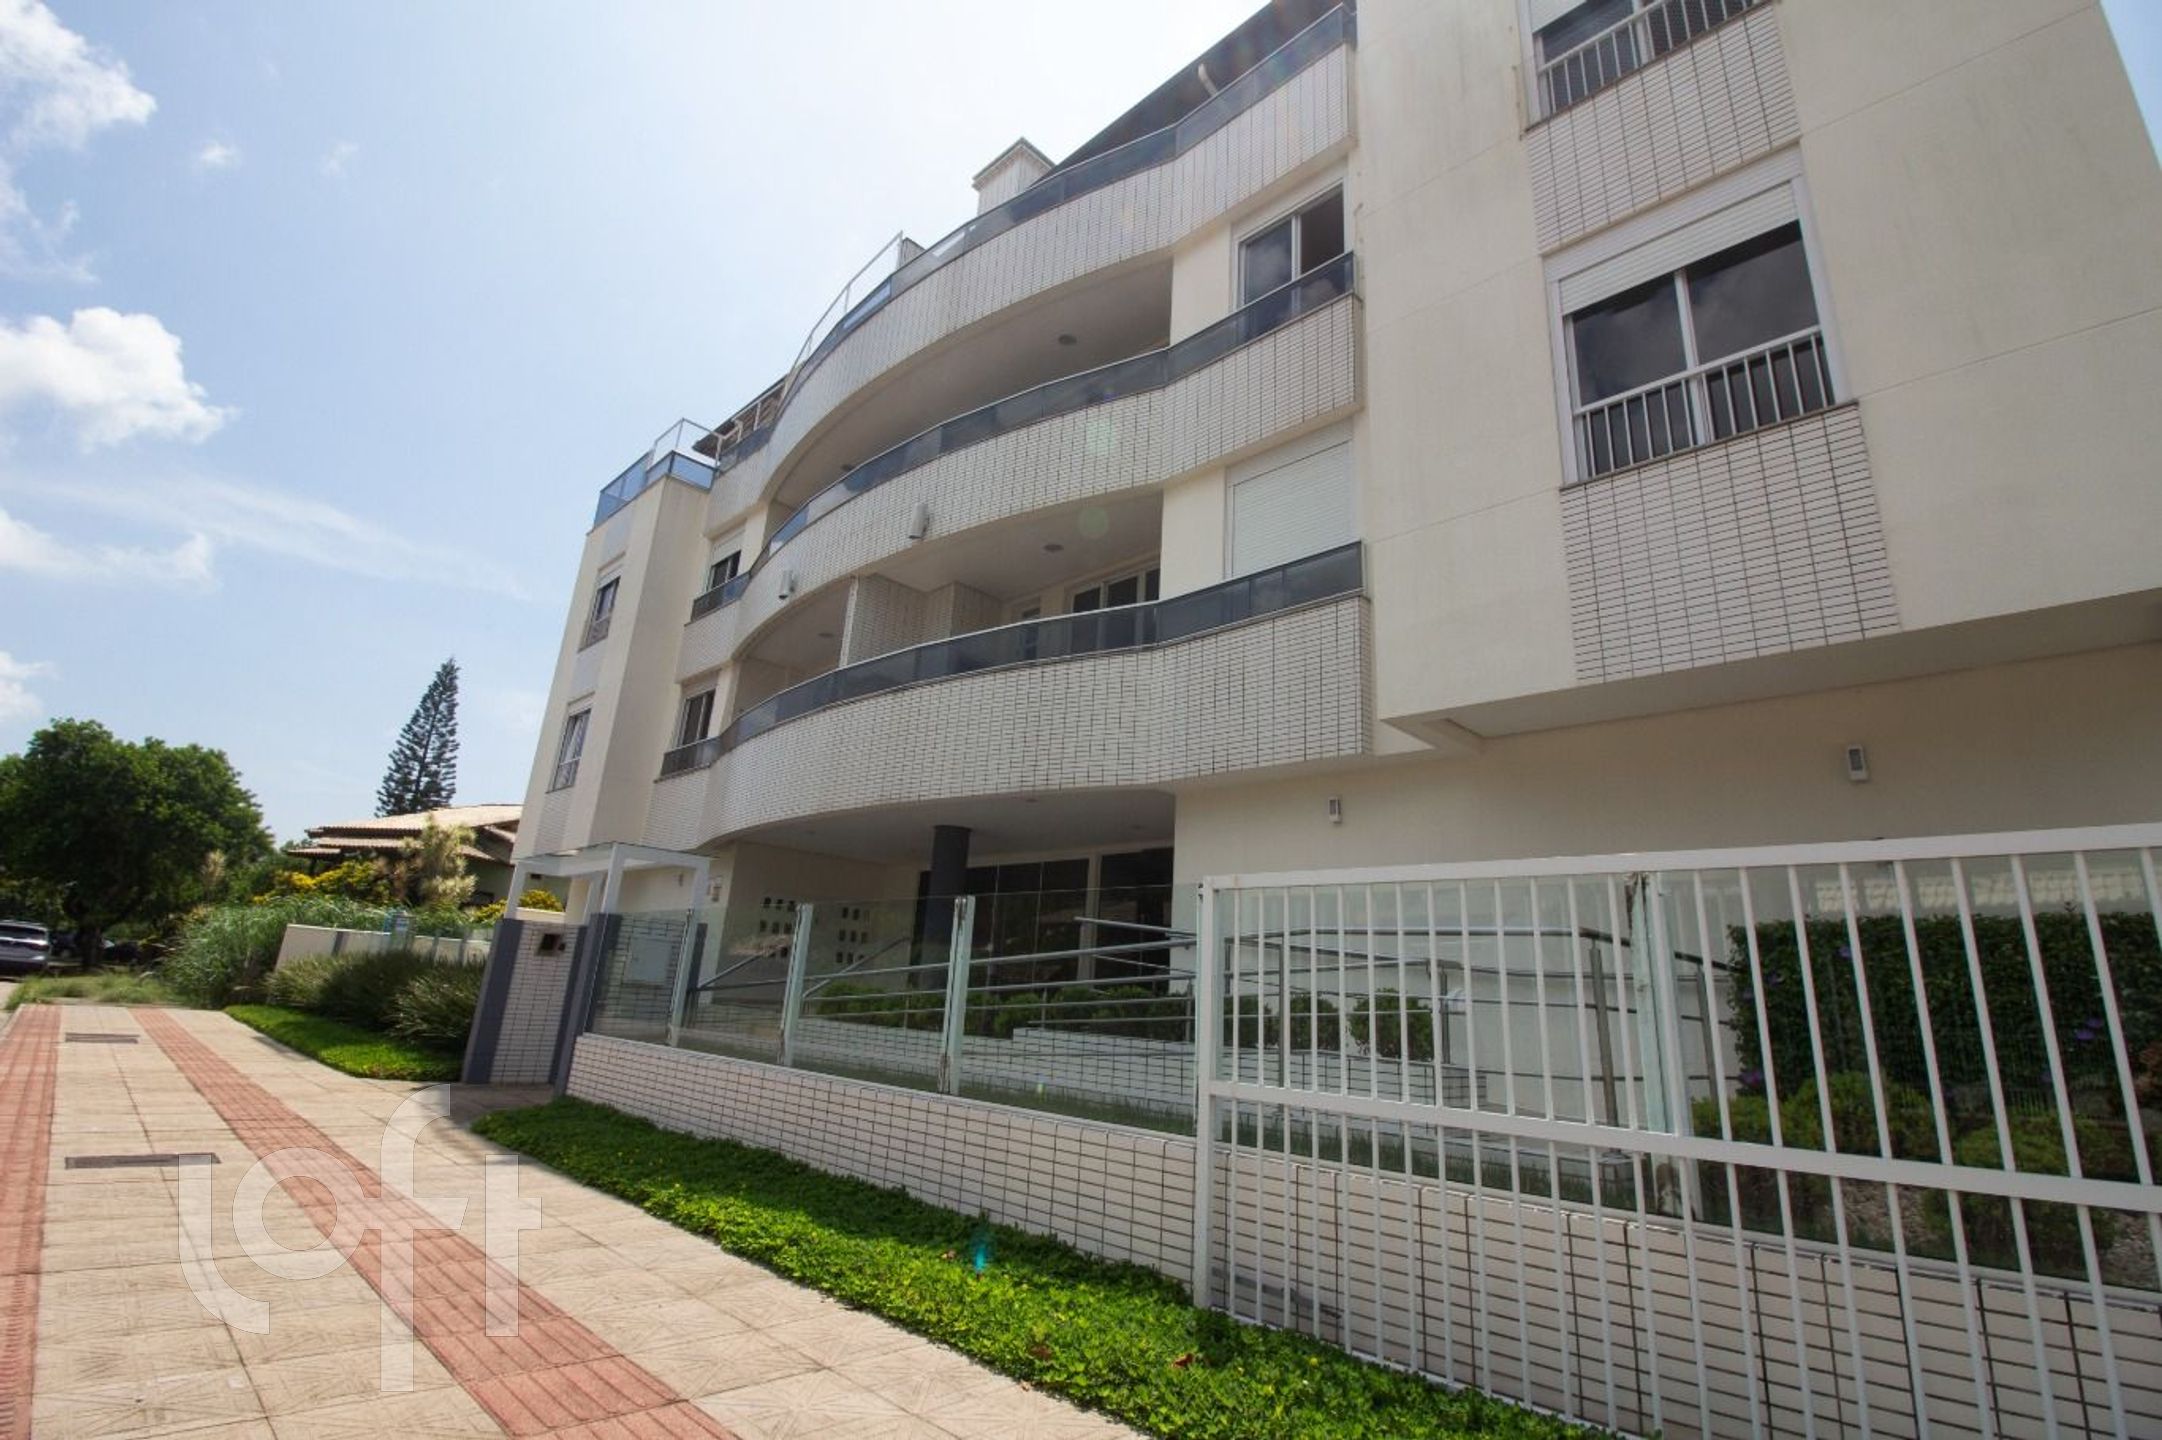 VENDA &#8211; Apartamento de 2 quartos no bairro Lagoa Pequena, Florianópolis &#8211; PU19wx06l